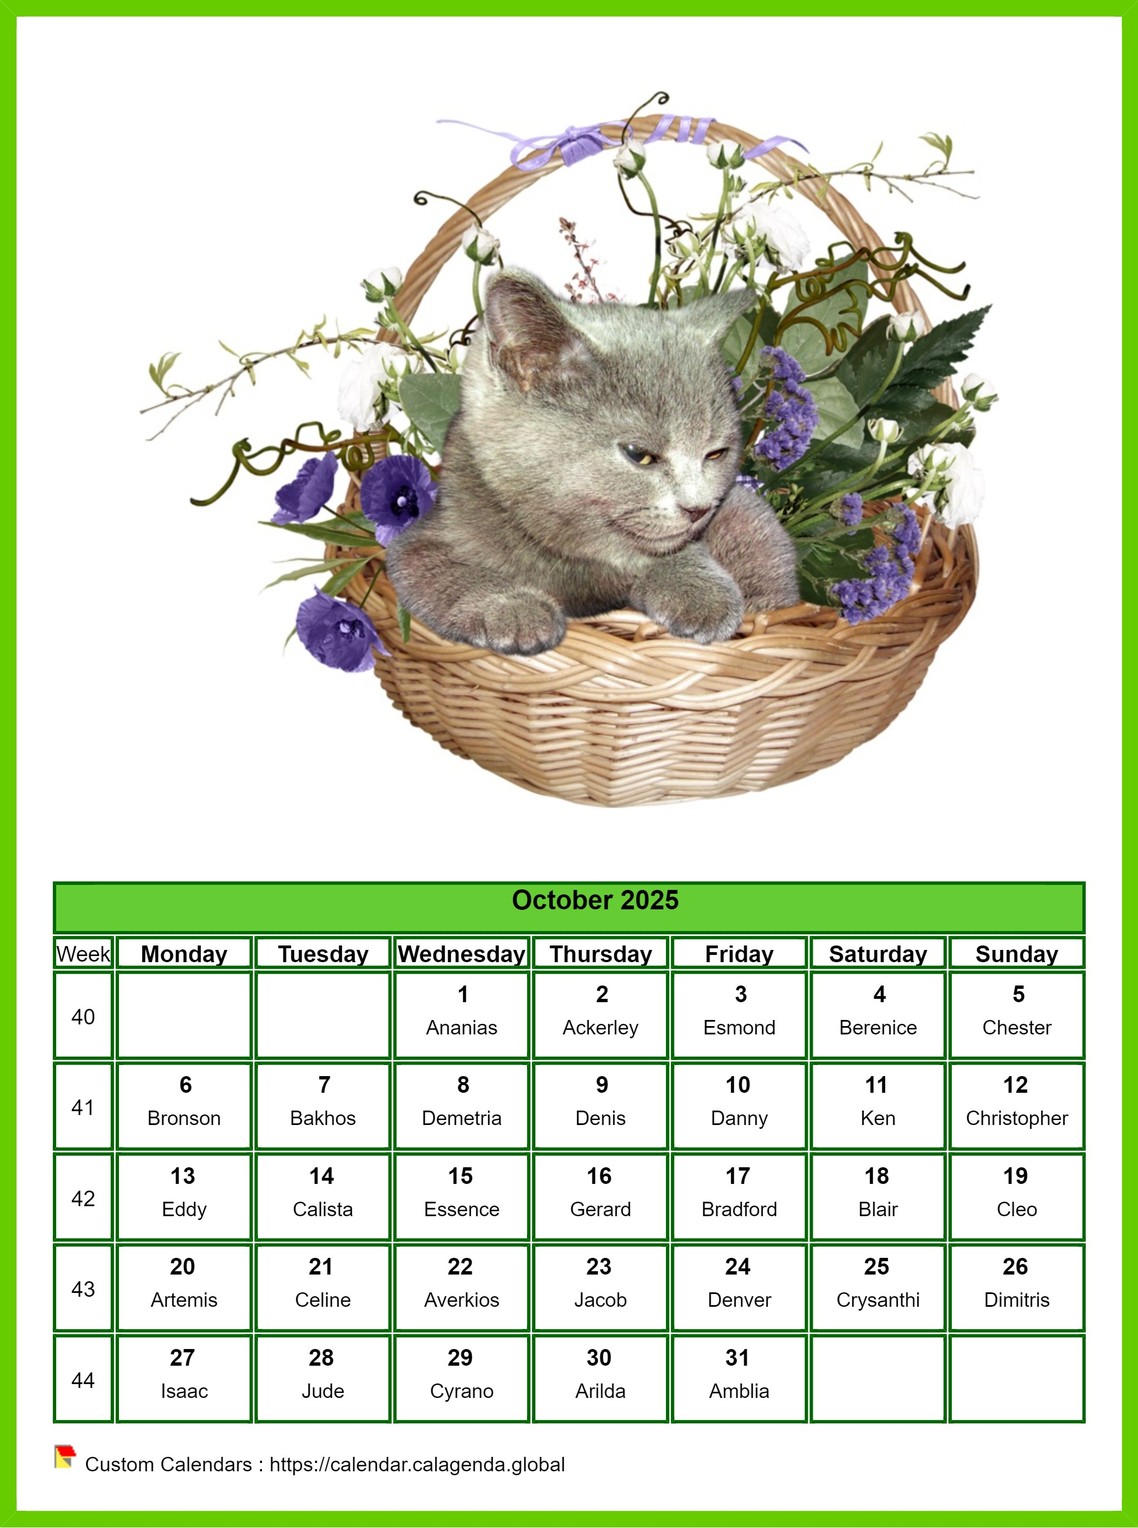 Calendar October 2025 cats